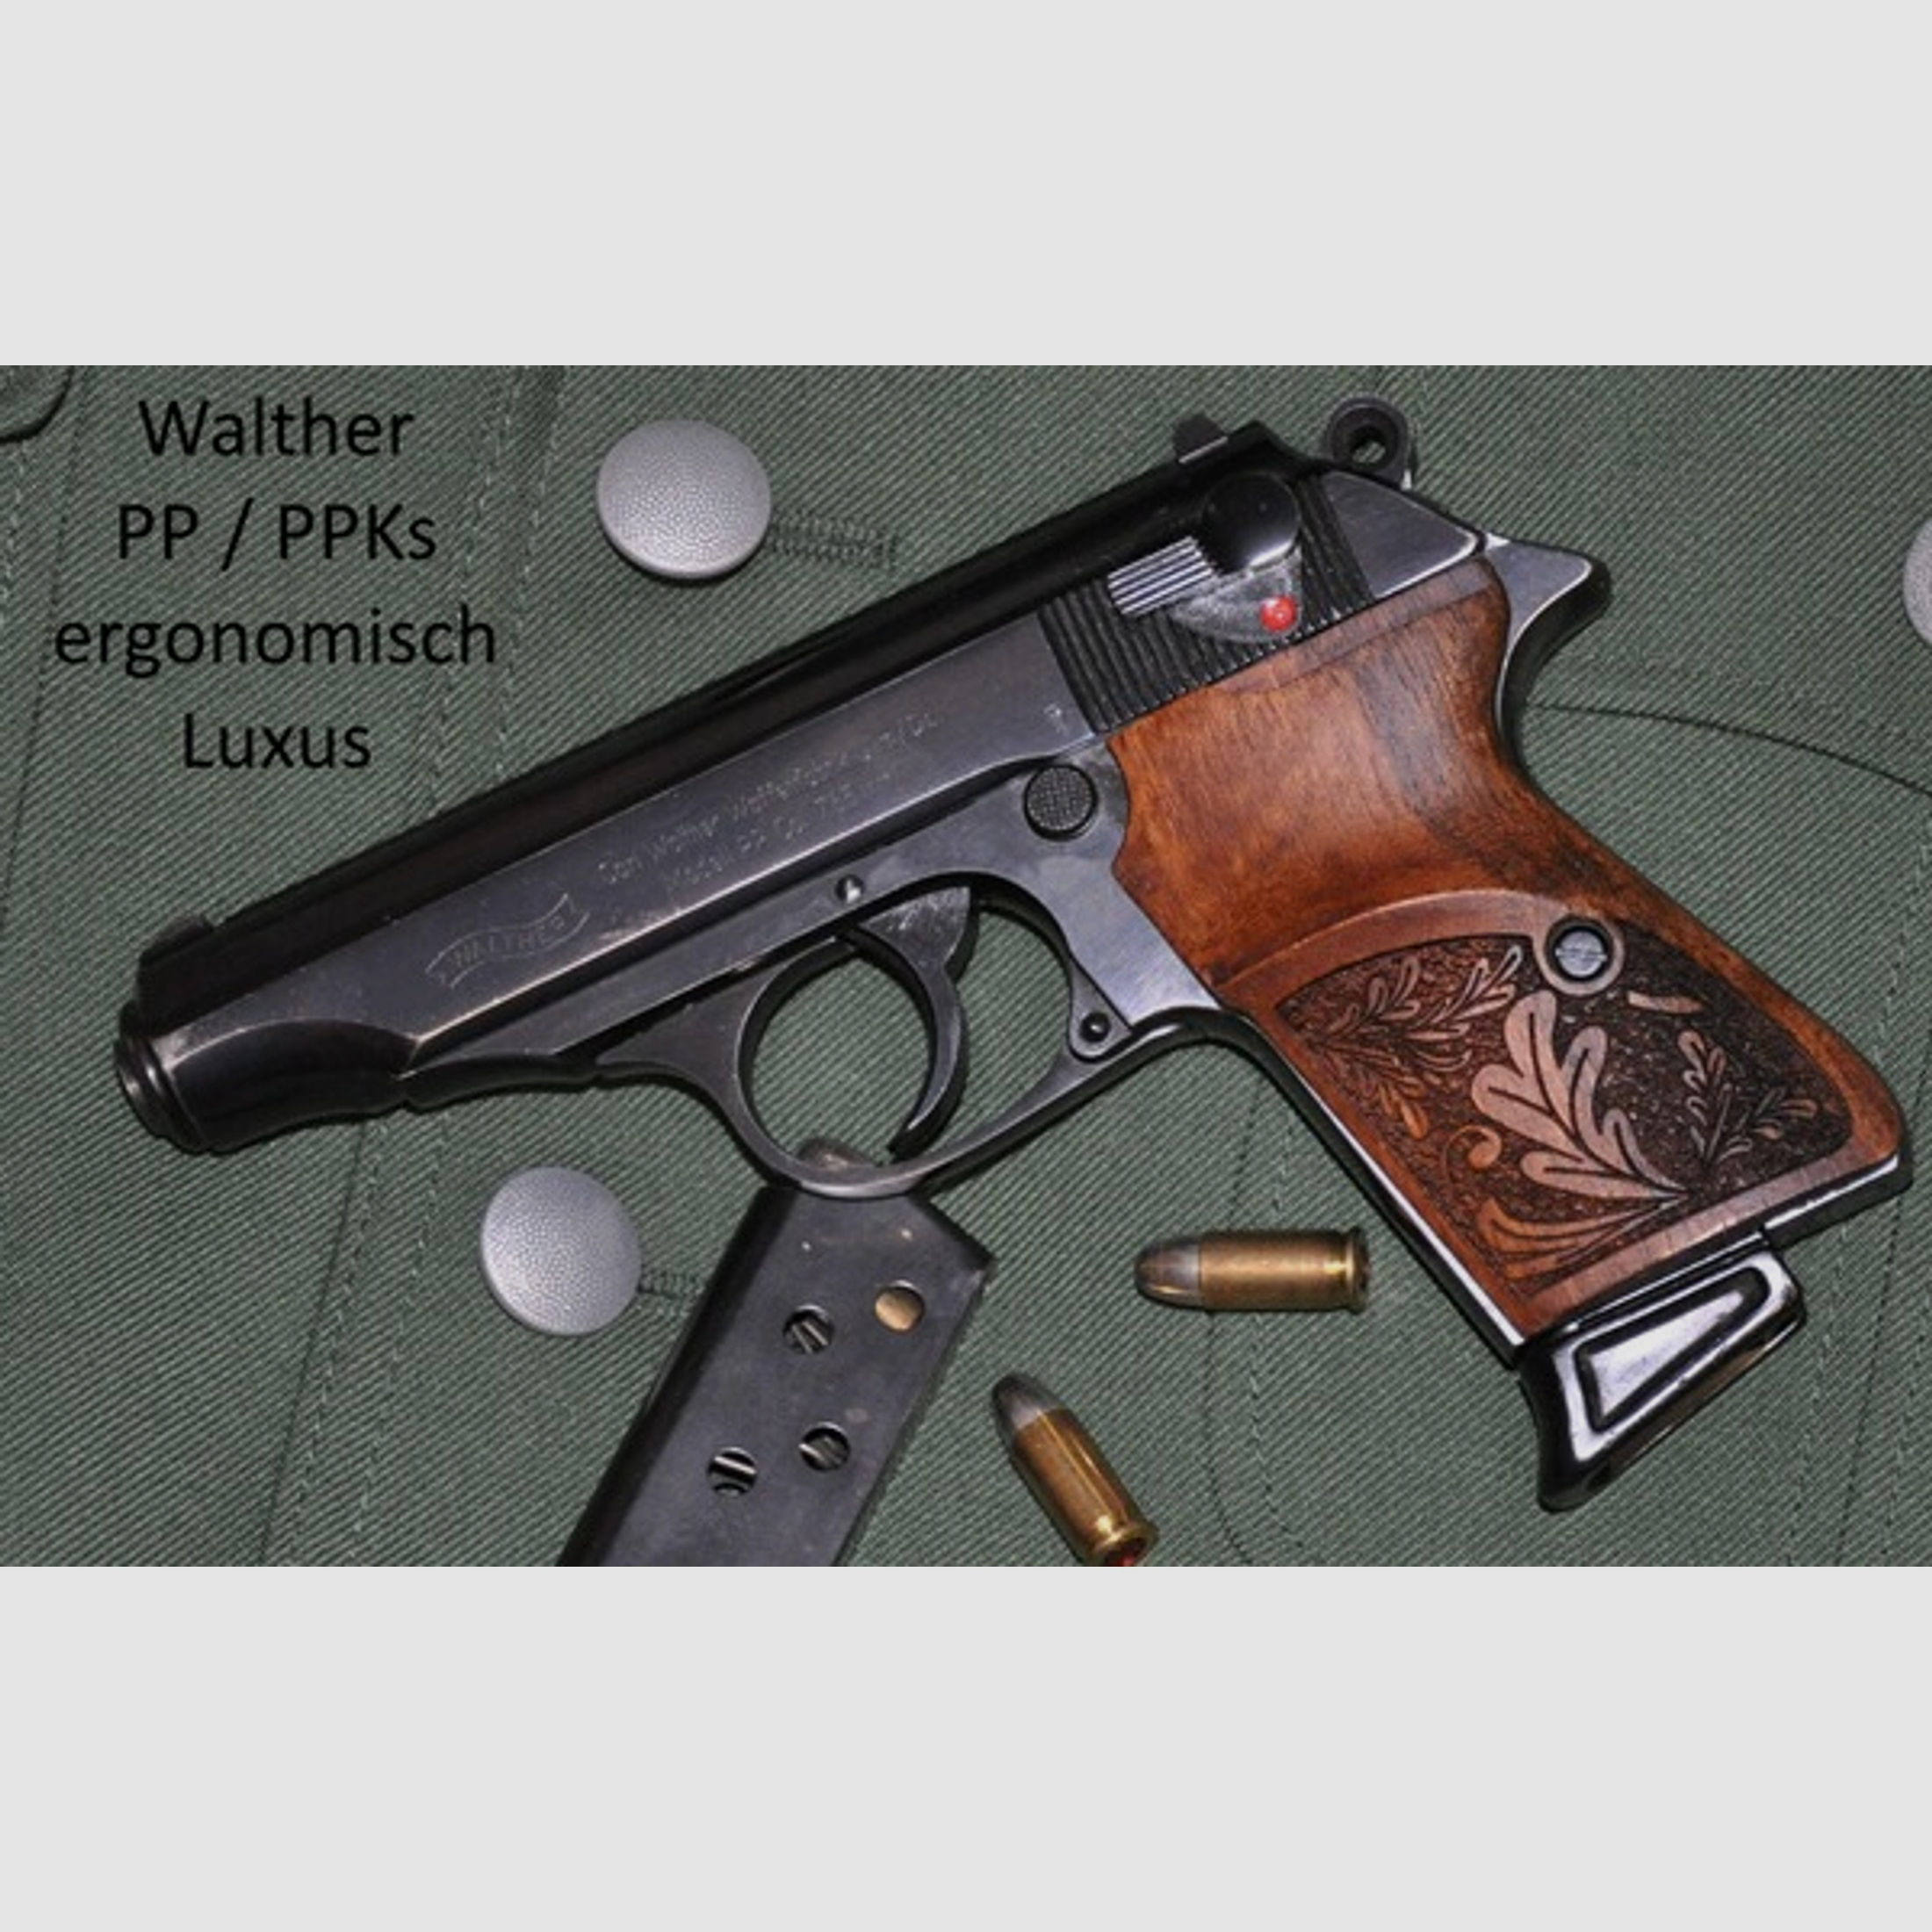 ergonomisch geformte Luxus-Griffschalen für Walther PP (nicht PPK) aus Nussbaum